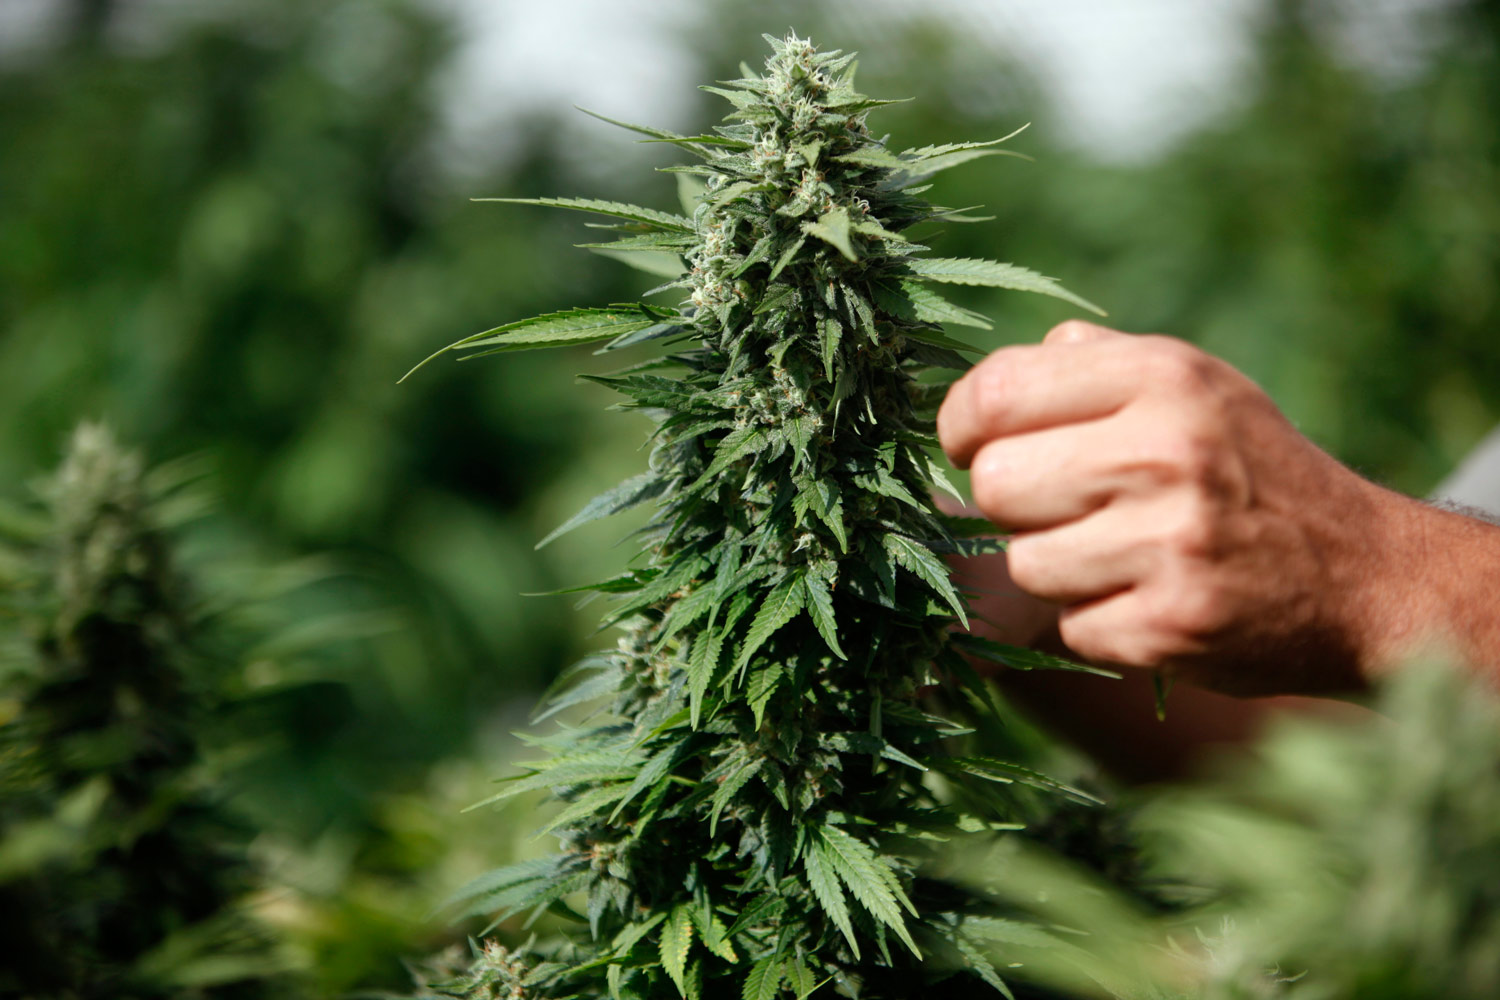  Pago Veiano, pianta di marijuana nascosta nel giardino di casa: denunciato